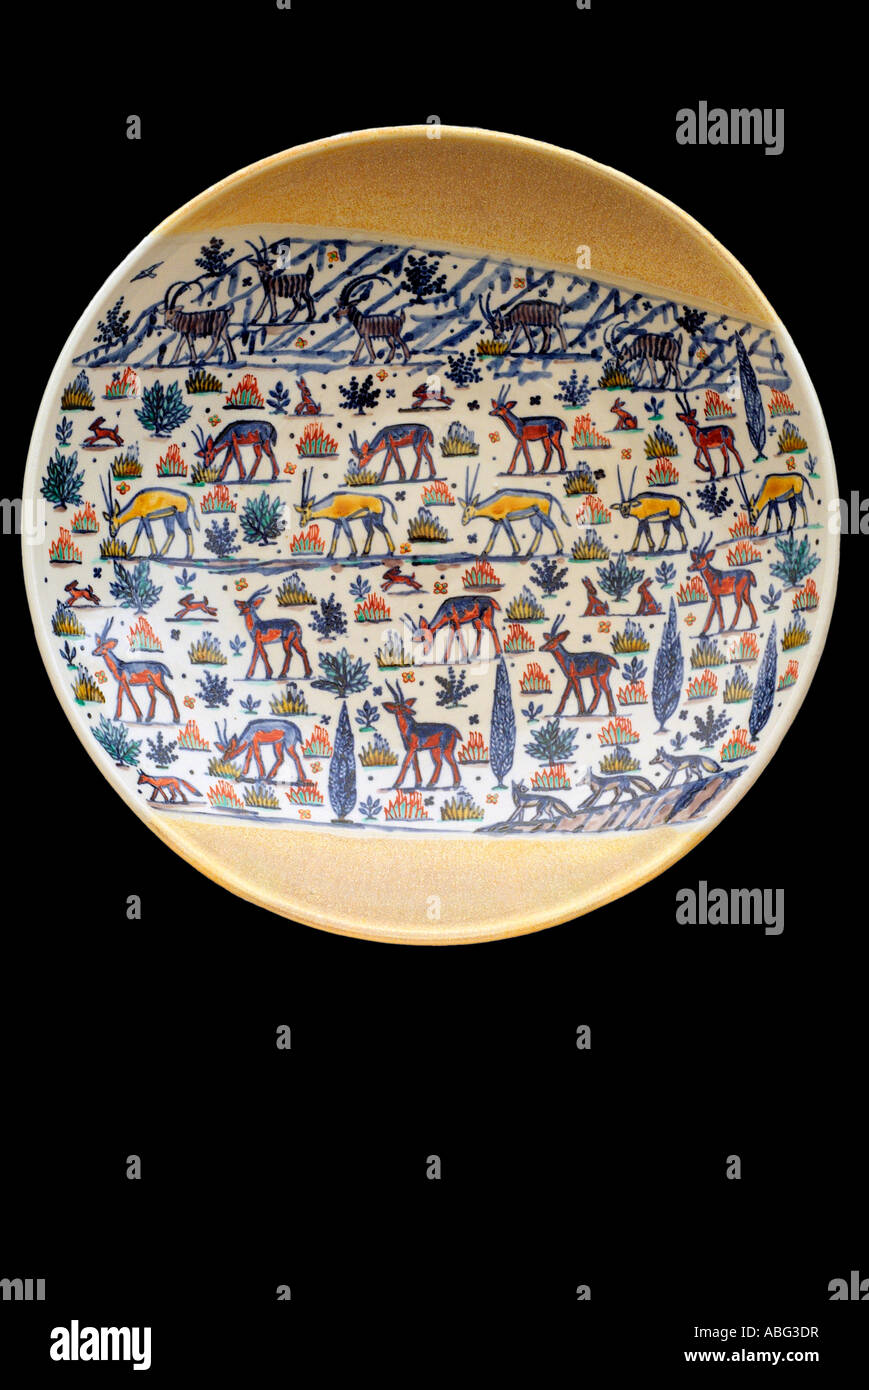 Piastra in ceramica figura animale Close up studio color terracotta colorata unici ed esclusivi uno off icona seminale iconico whirl Foto Stock